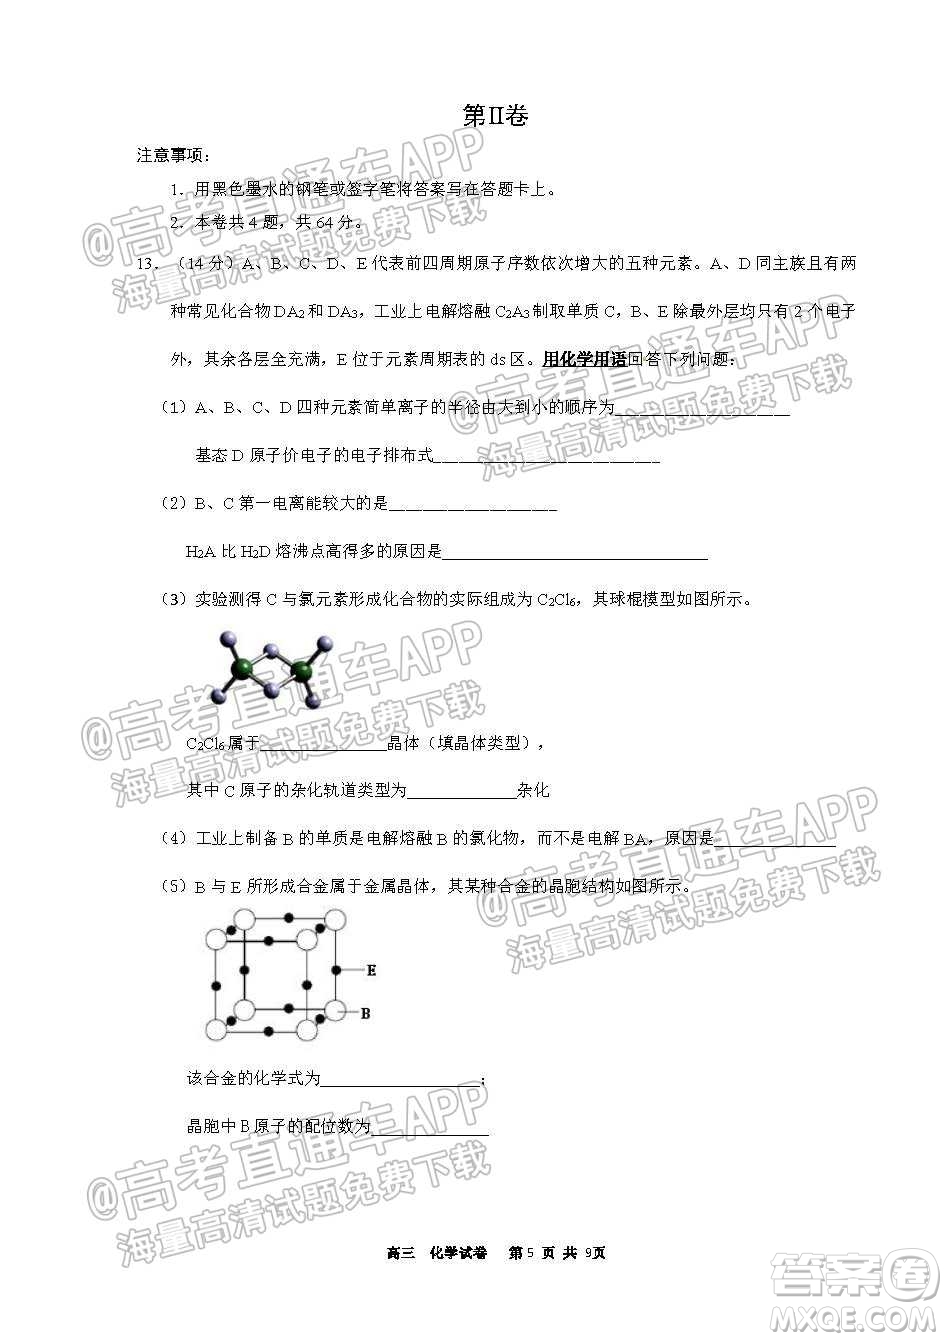 天津滨海新区大港一中2022学年度高三年级入学测试化学试卷及答案